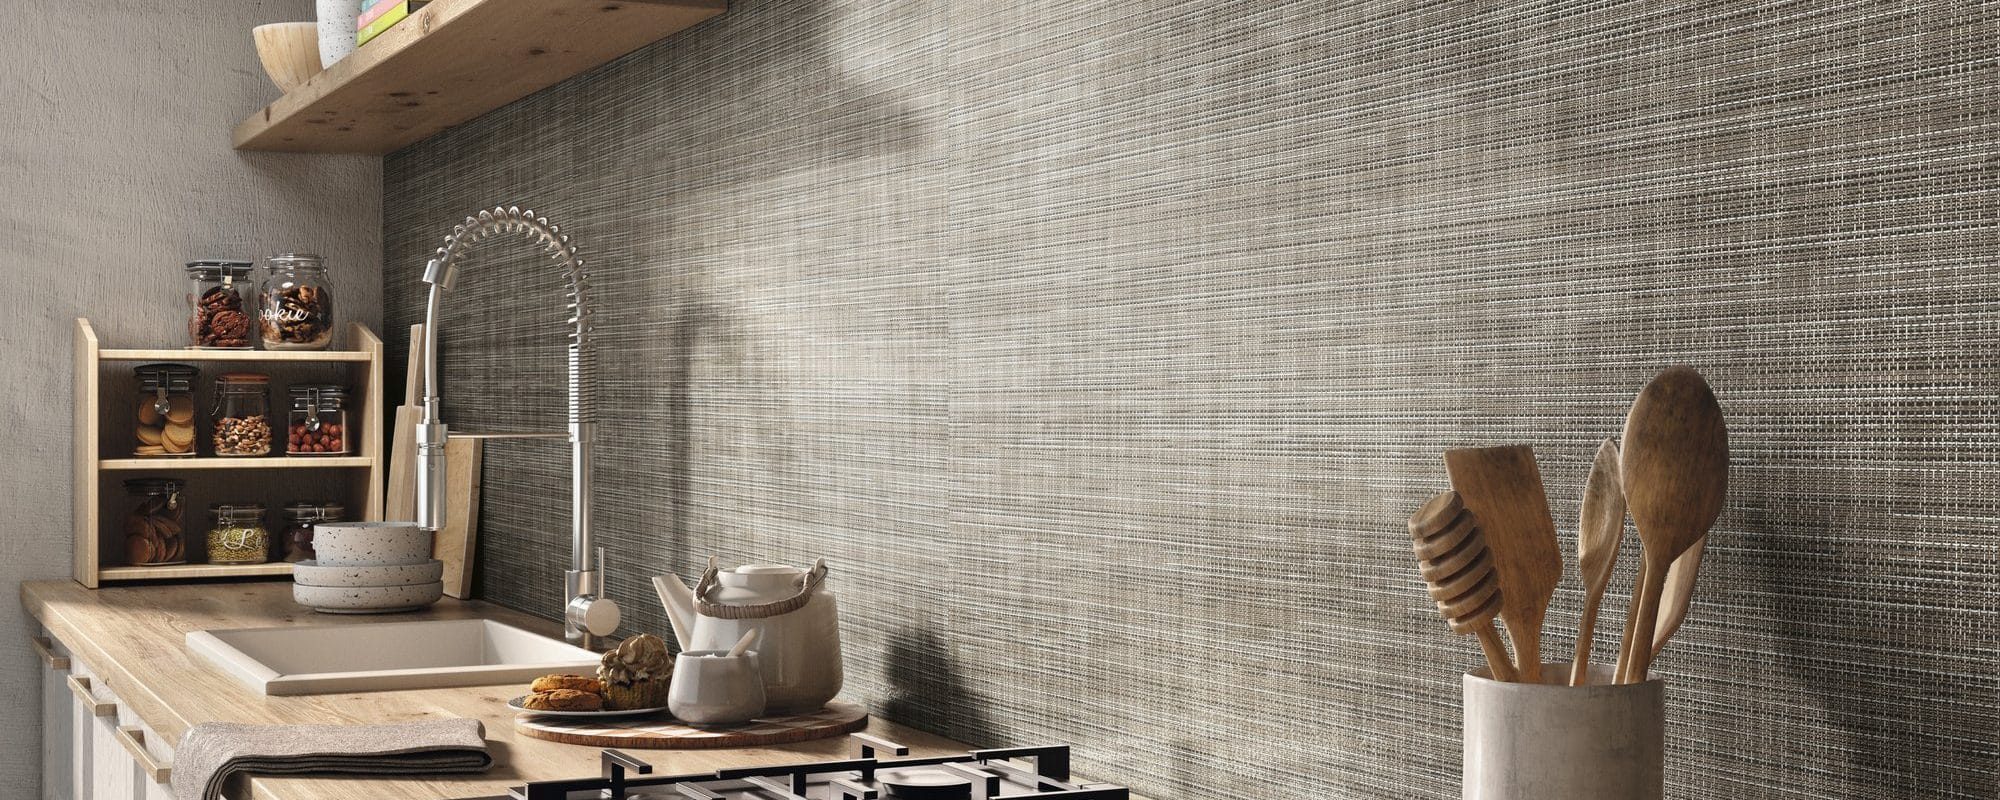 HABITAT Effect Wall & Floor Tiles for Kitchens uk slider